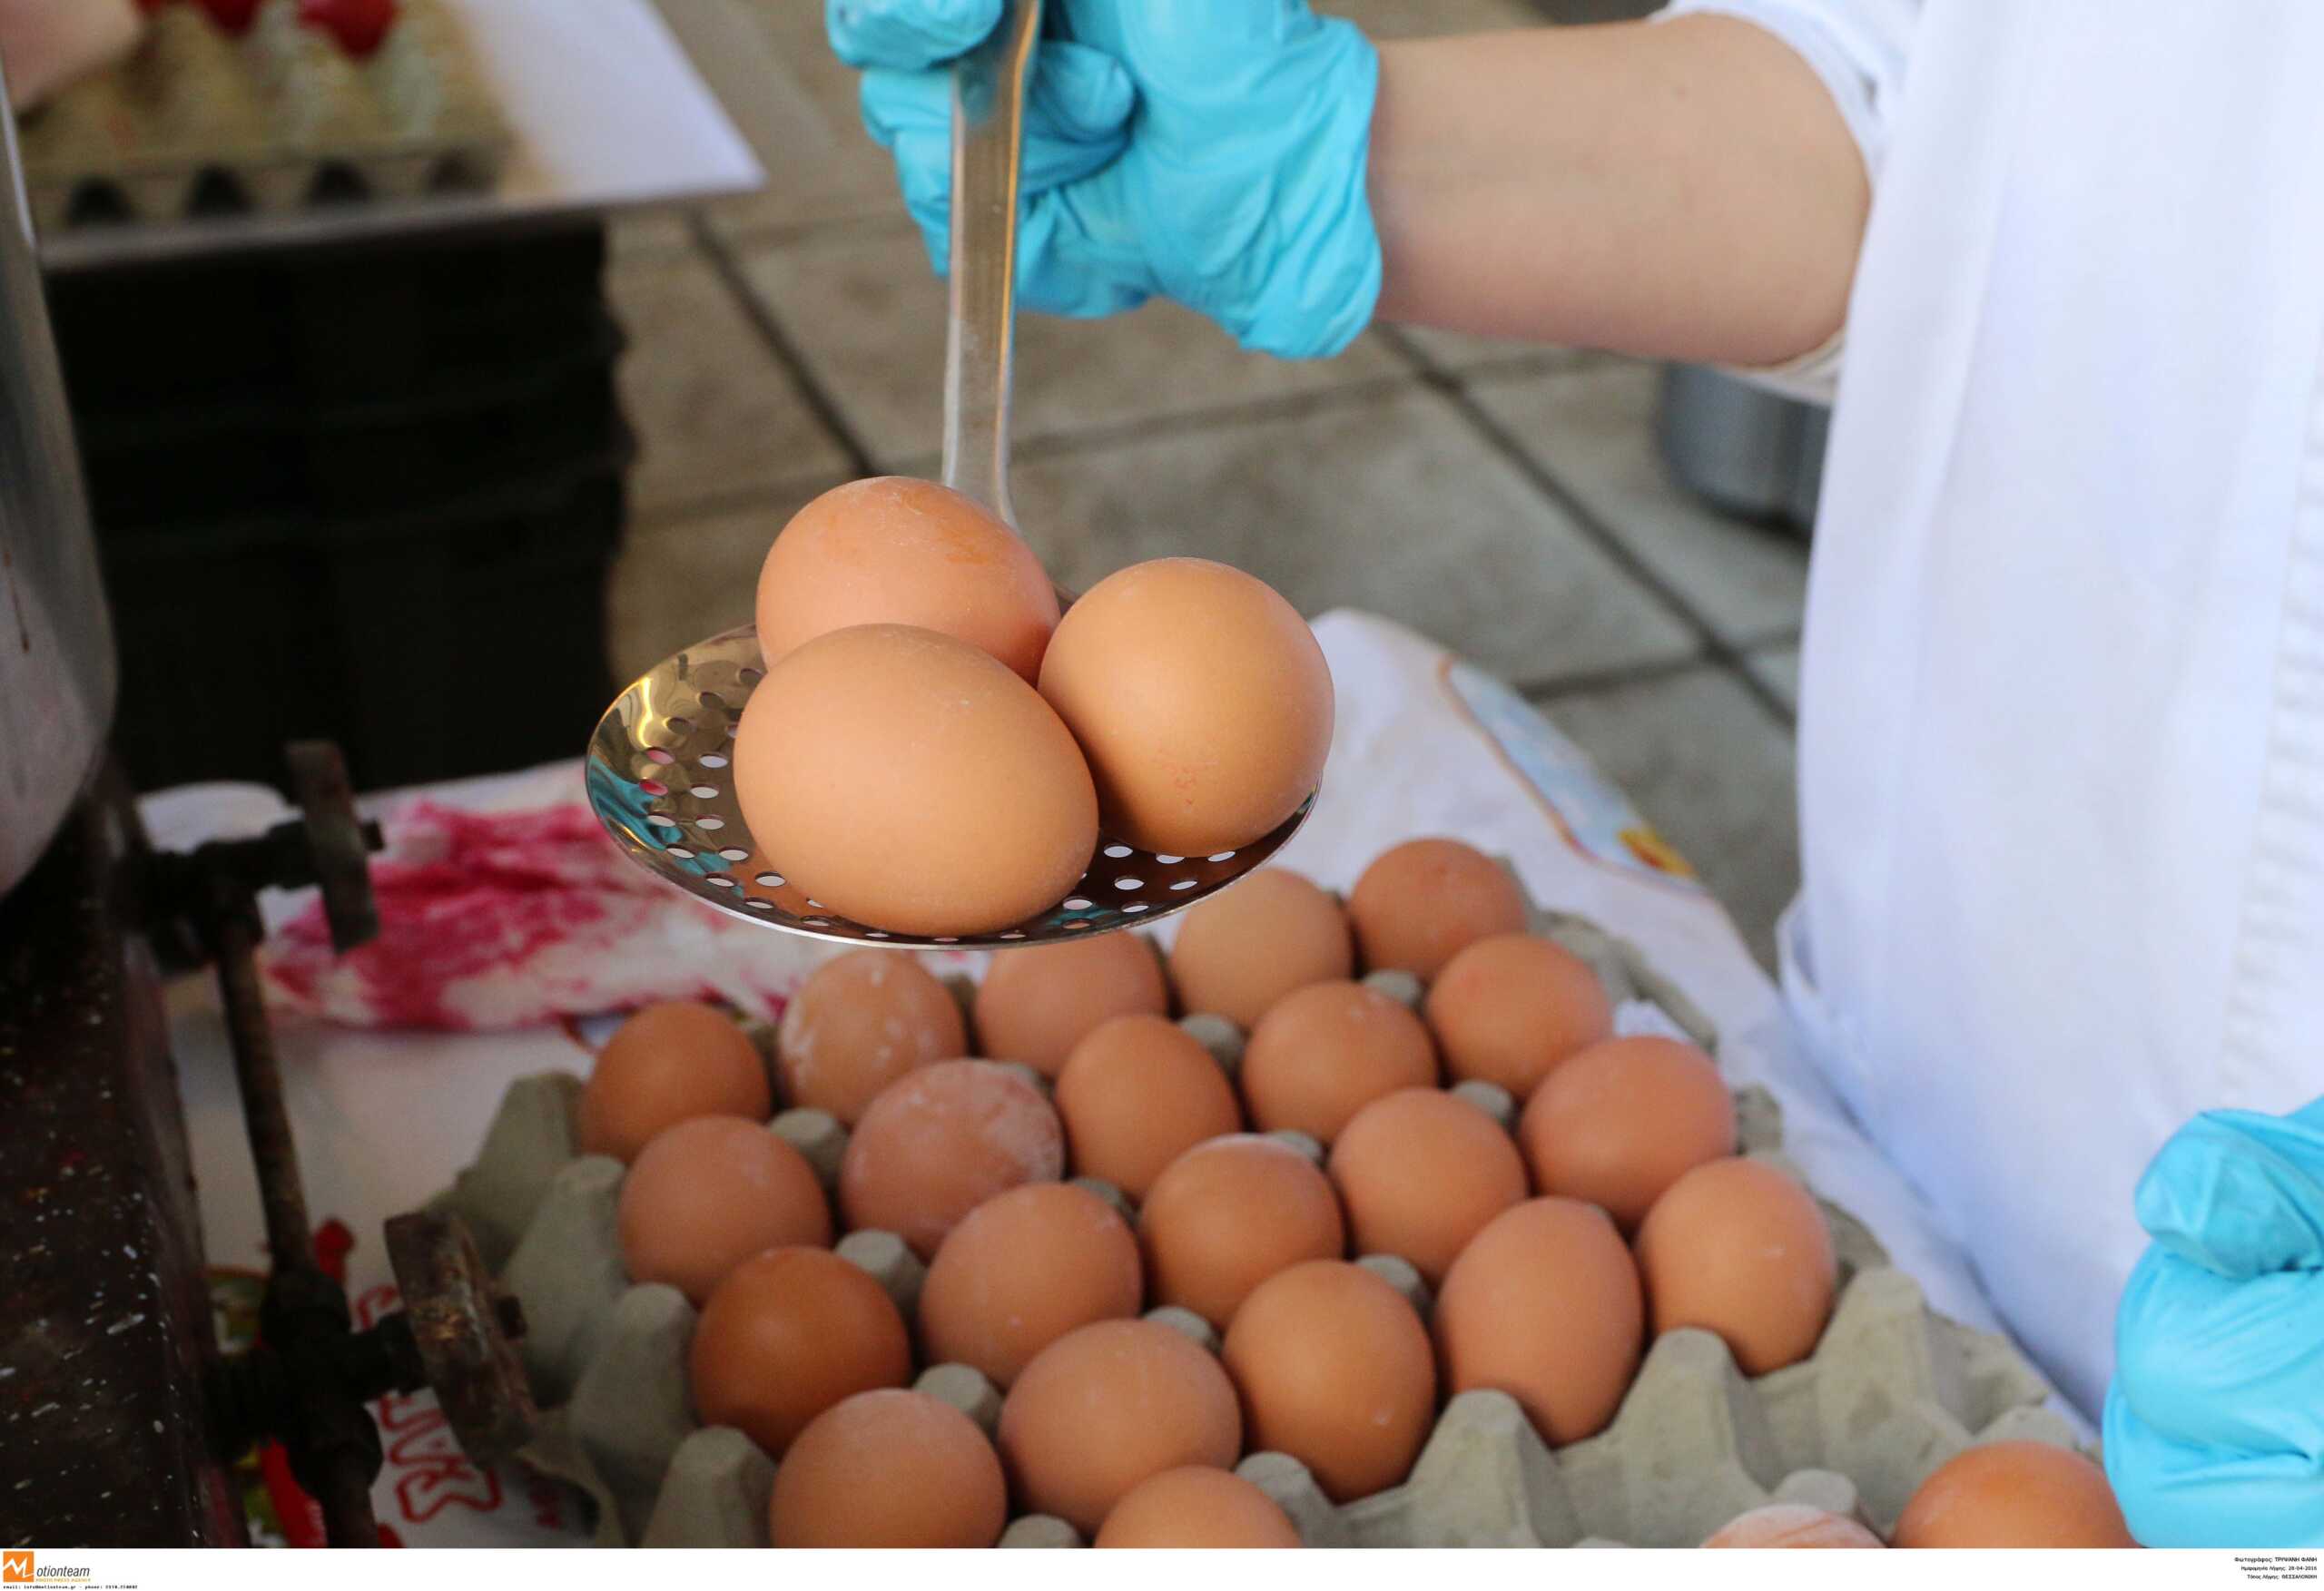 Σέρρες: Επιστρέφουν οι διάσημες  «αυγομαχίες», γιατί όλα τα αυγά πρέπει να είναι βρασμένα αλλά άβαφα